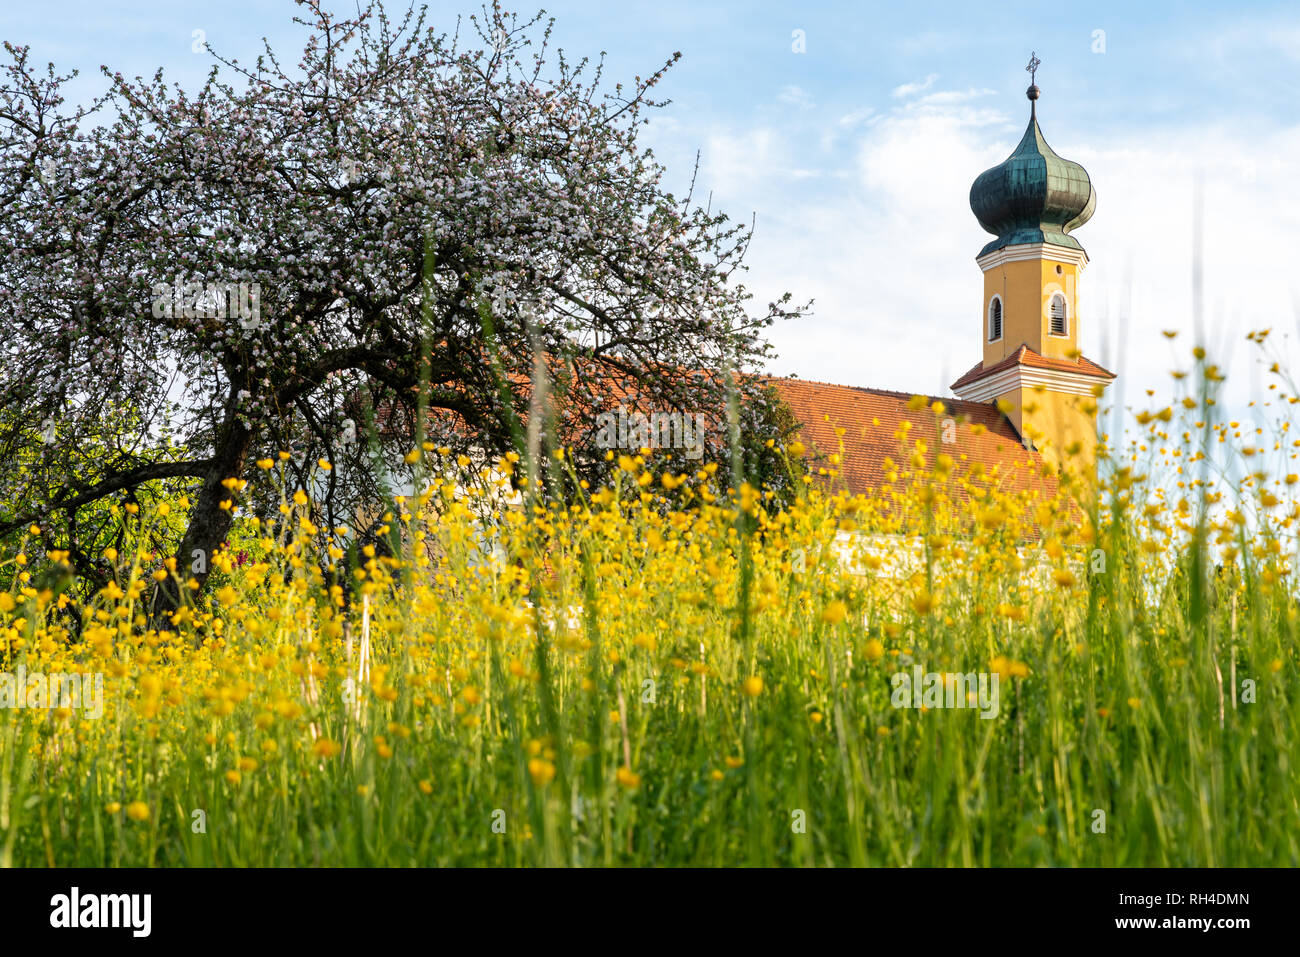 L'église baroque bavarois avec un oignon dome vu à travers une prairie en fleurs Banque D'Images